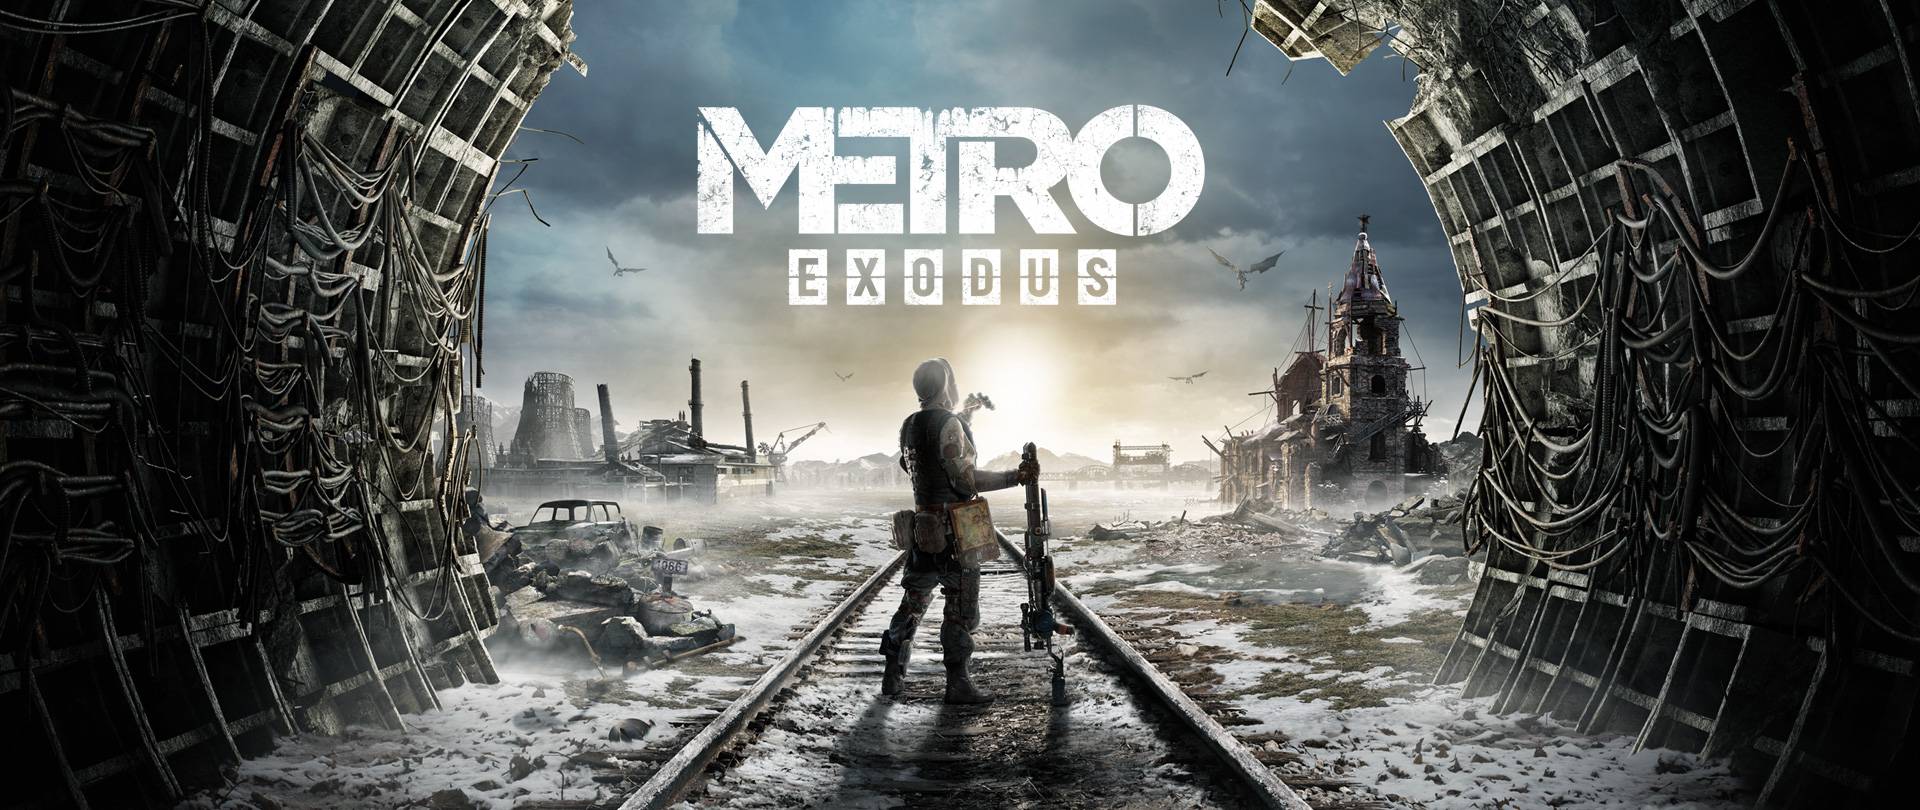 Metro Exodus, les créateurs nous montrent l’évolution du développement.